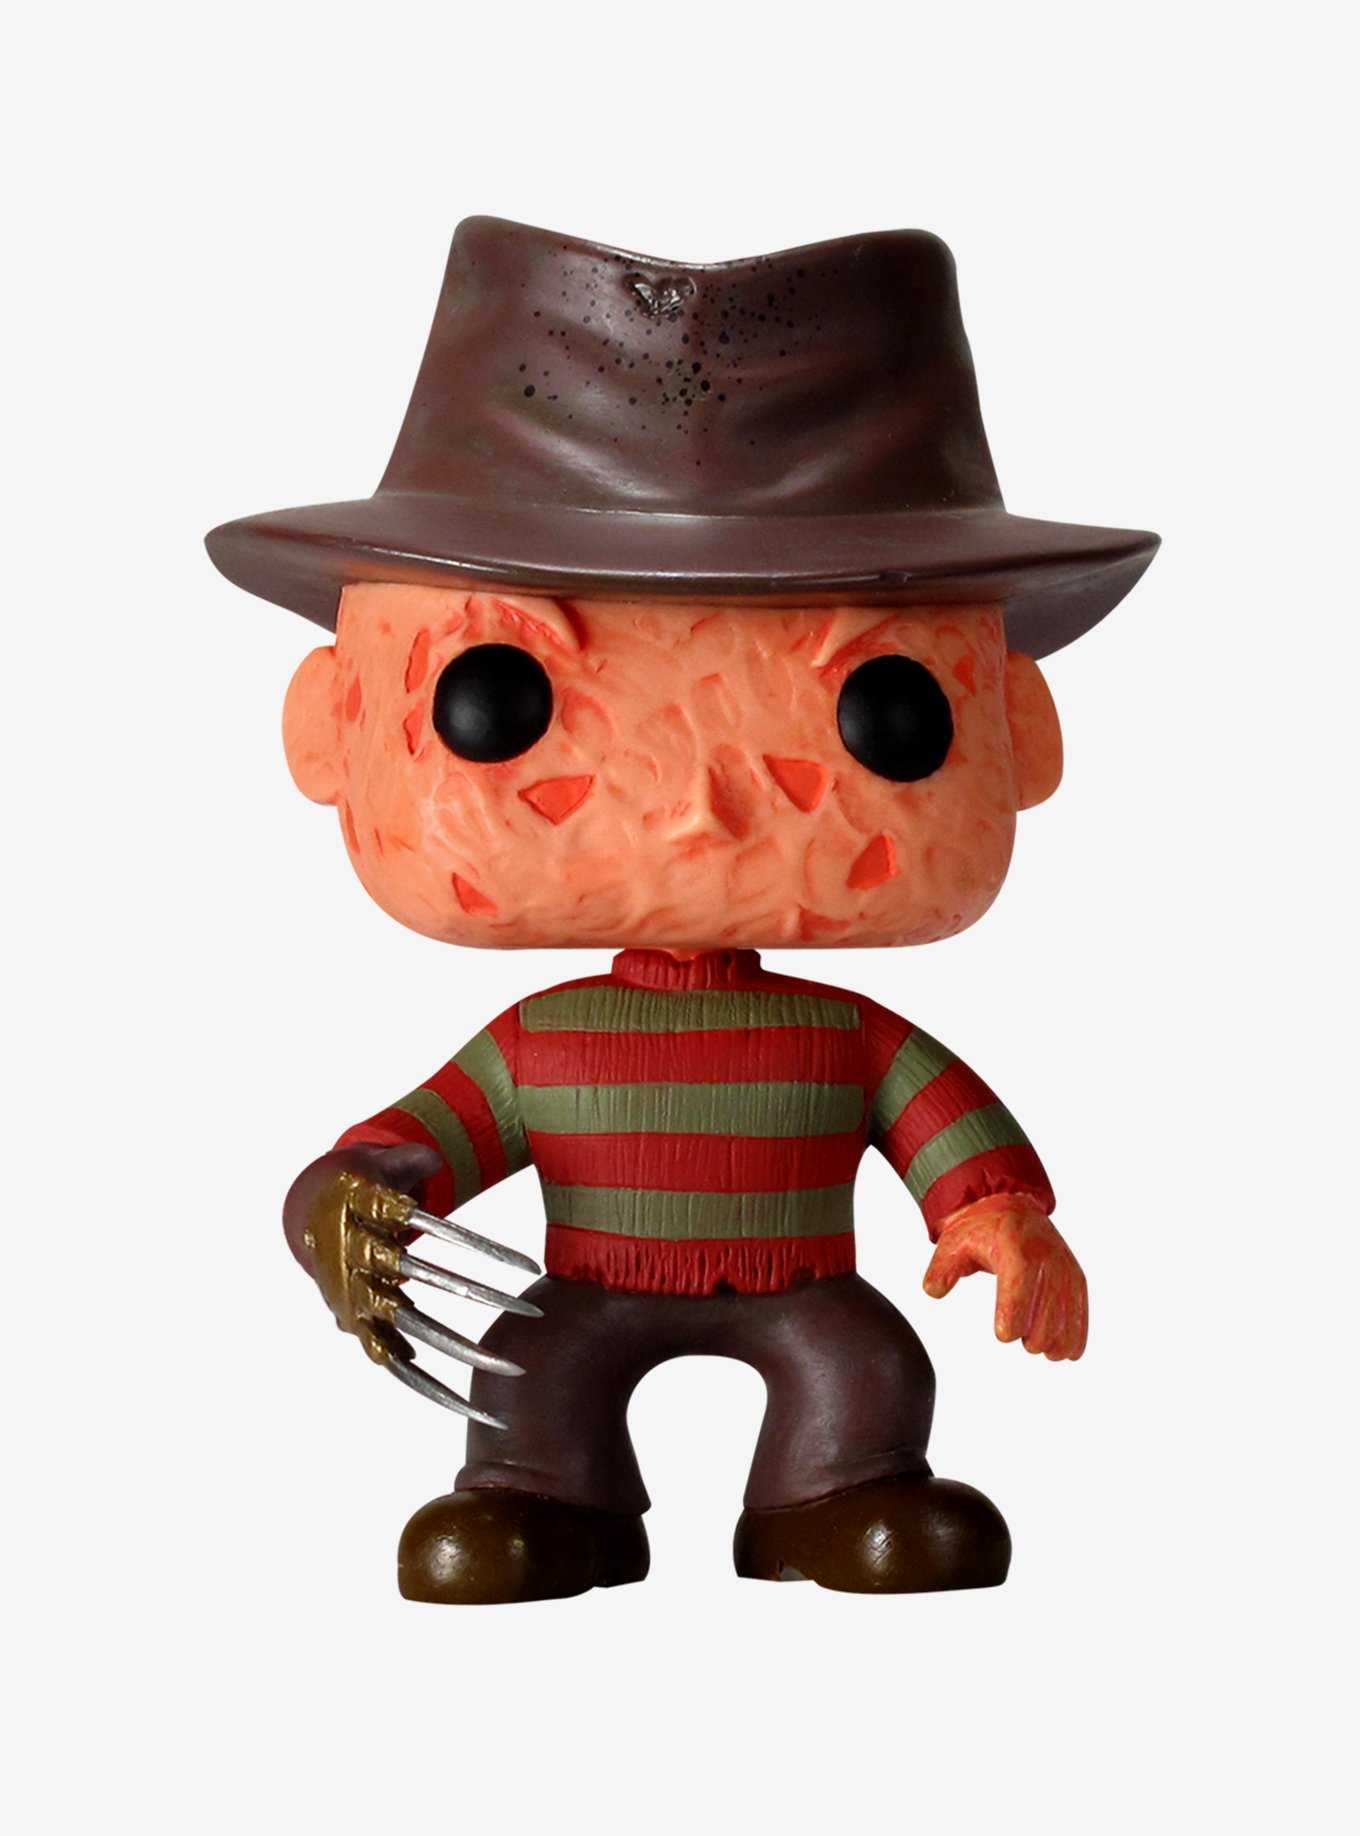 Funko A Nightmare On Elm Street Pop! Movies Freddy Krueger Vinyl Figure, , hi-res